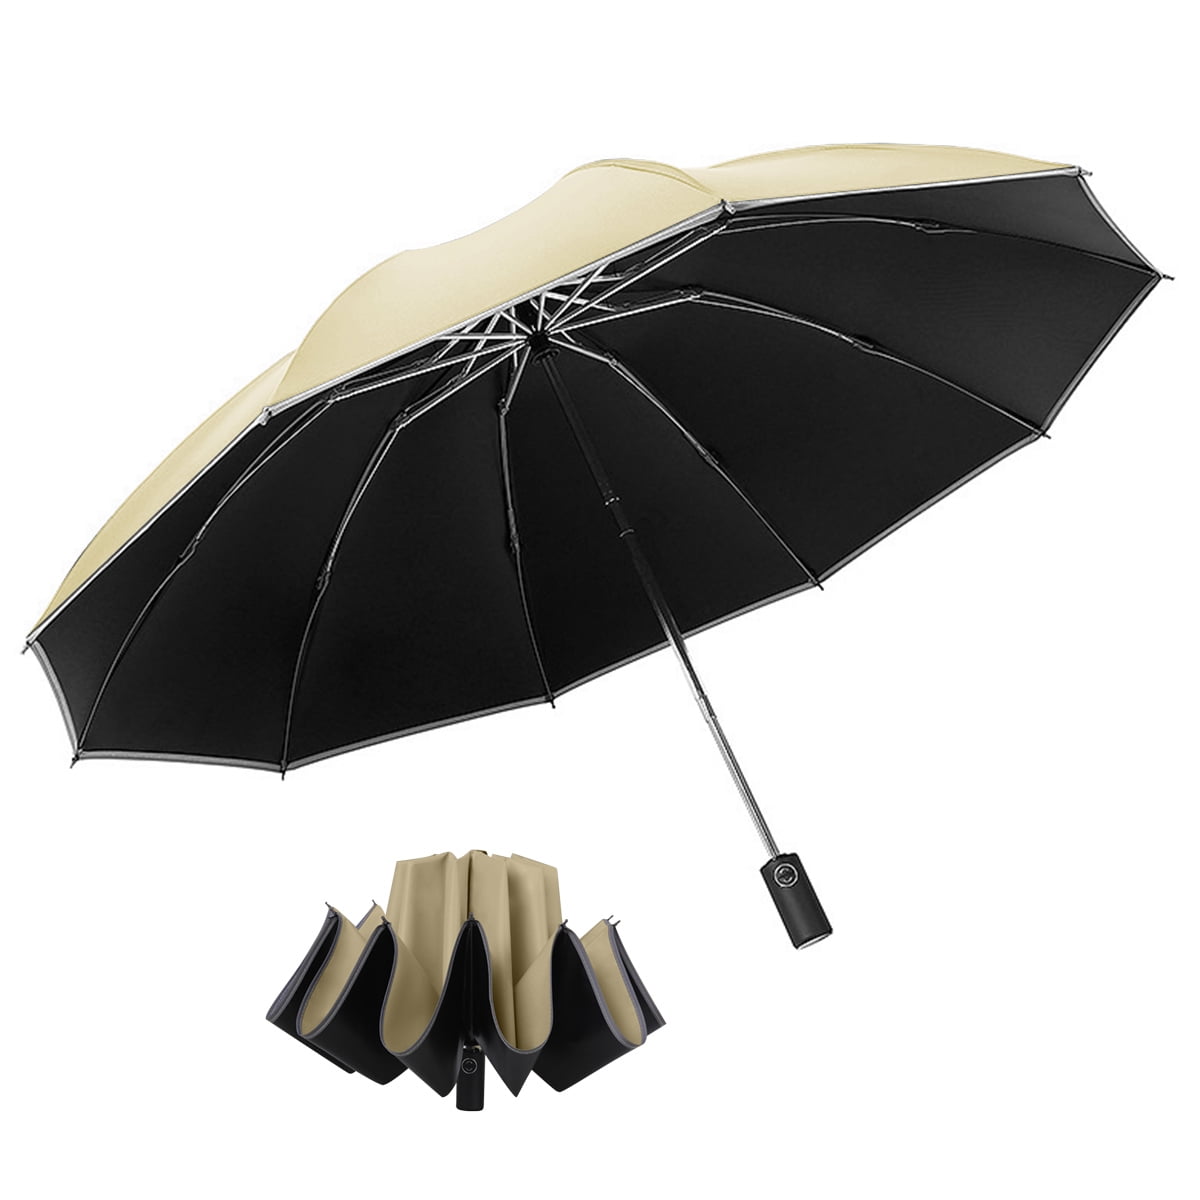 DOENR Compact Travel Umbrella Brown Wall Sun and Rain Auto Open Close Umbrellas Lightweight Portable Outdoor Folding Umbrella